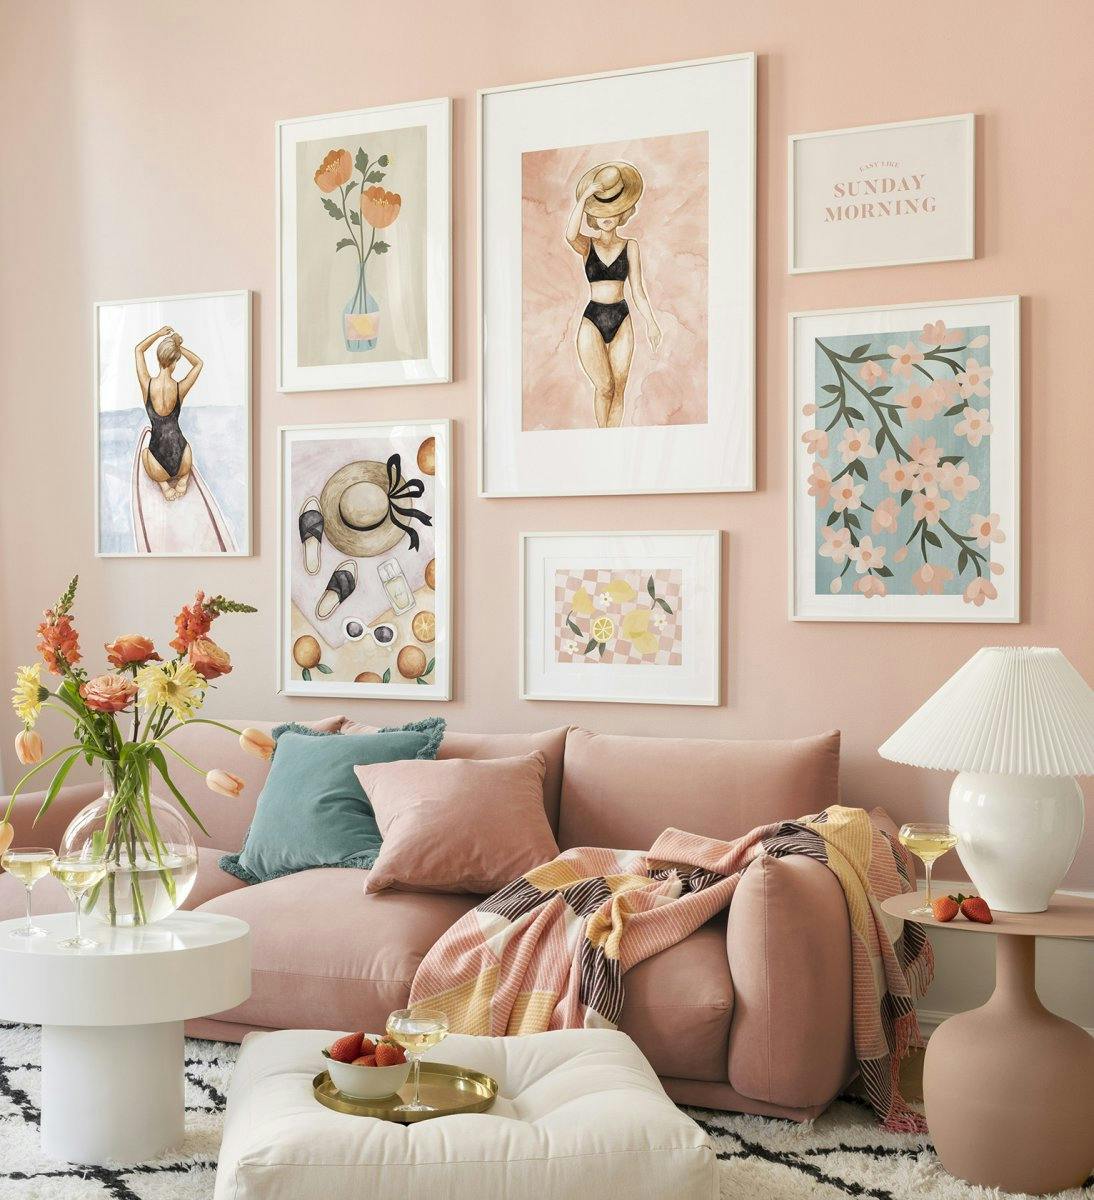 جدار معرض ملون مع مطبوعات الزهور والرسوم التوضيحية باللون الوردي مع إطارات بيضاء لغرفة المعيشة